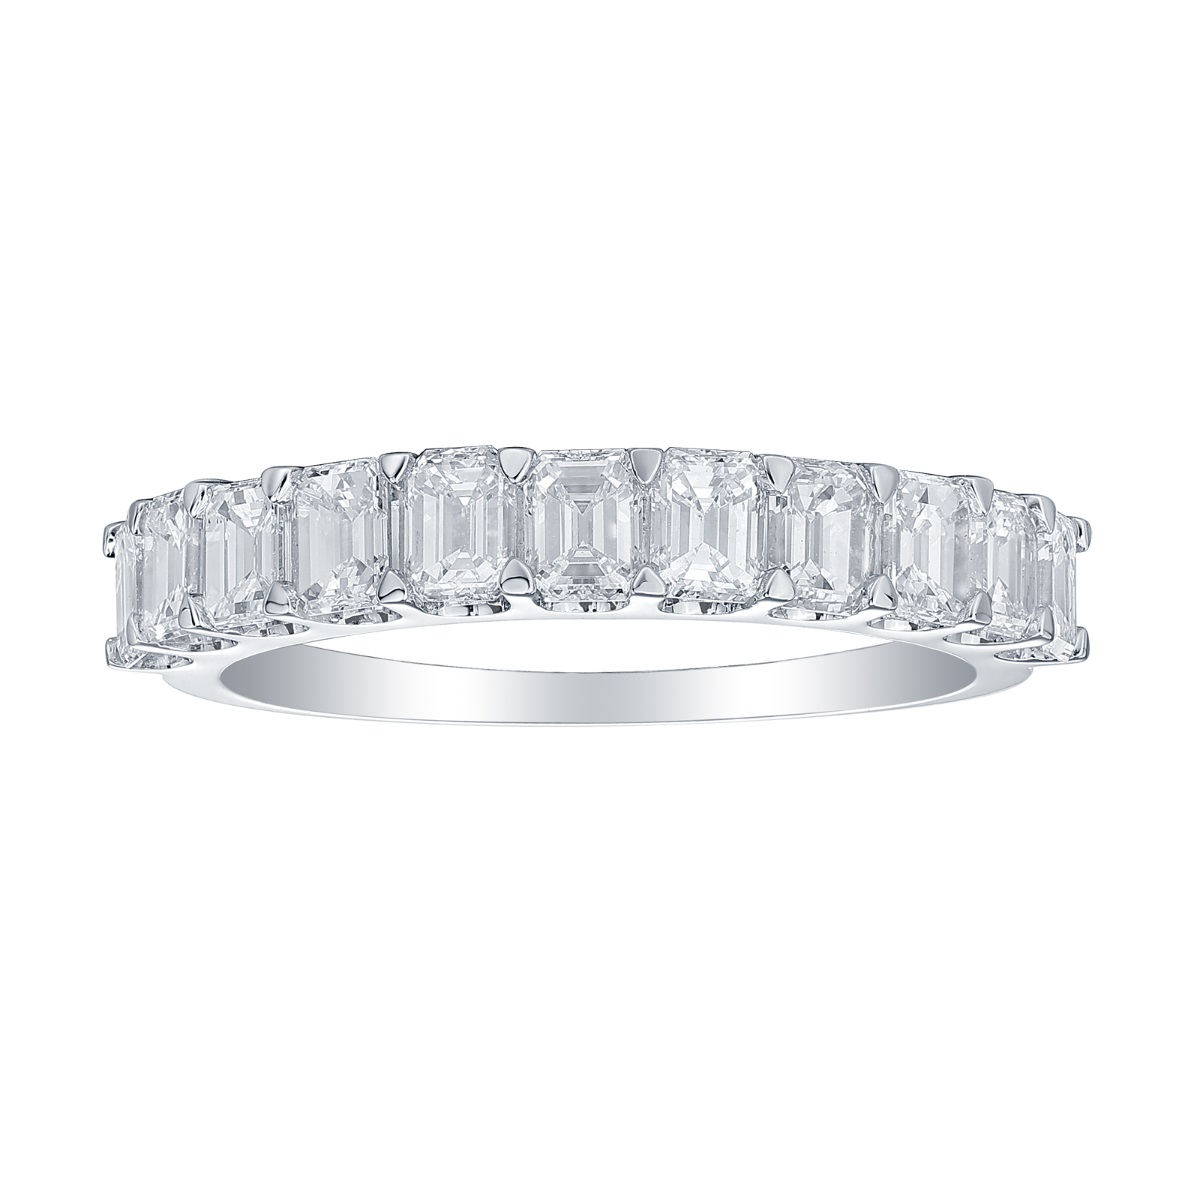 R36843WHT – 18K White Gold Diamond Ring, 1.68 TCW